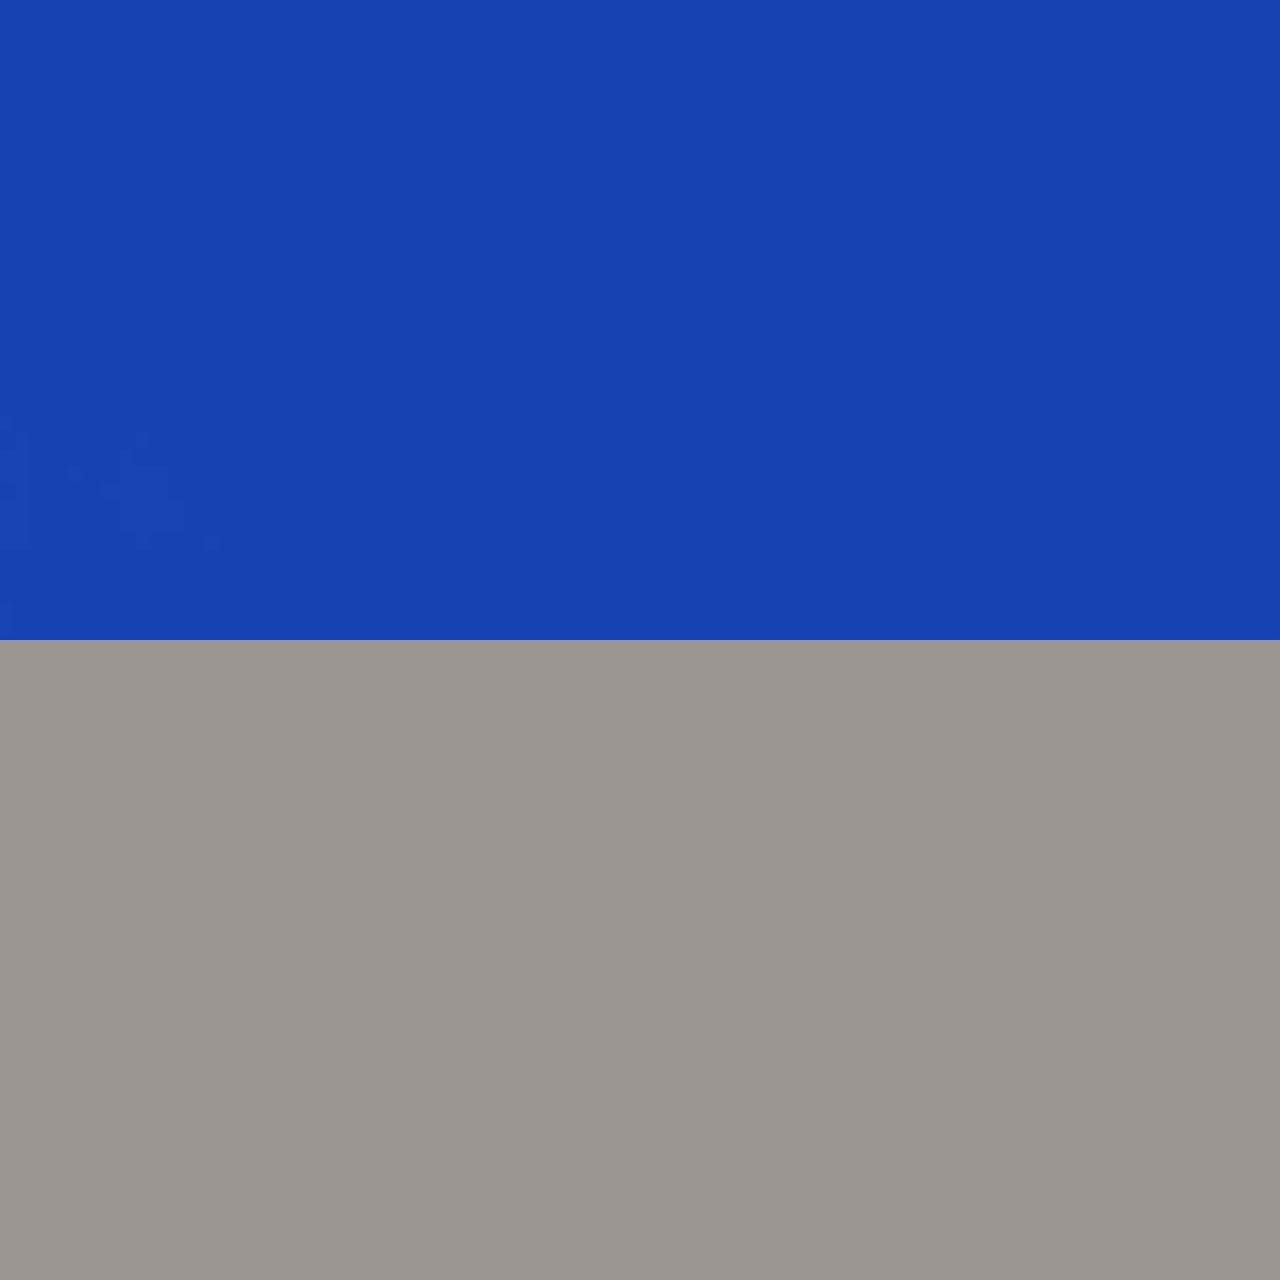 blue/grey